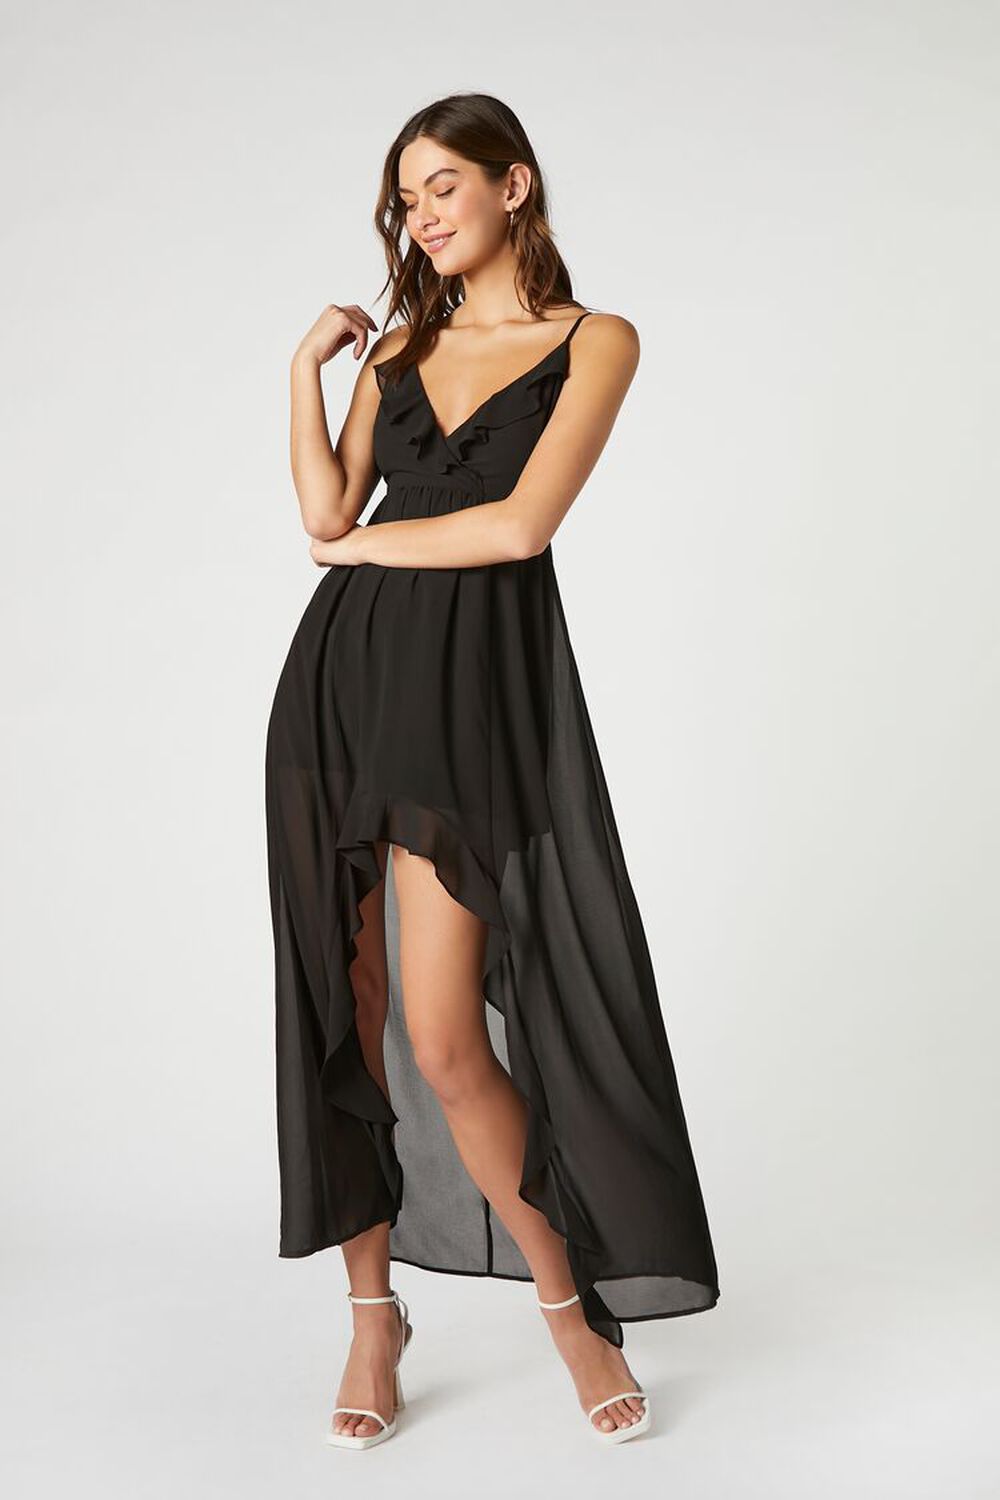 BLACK Chiffon Ruffle High-Low Dress, image 1